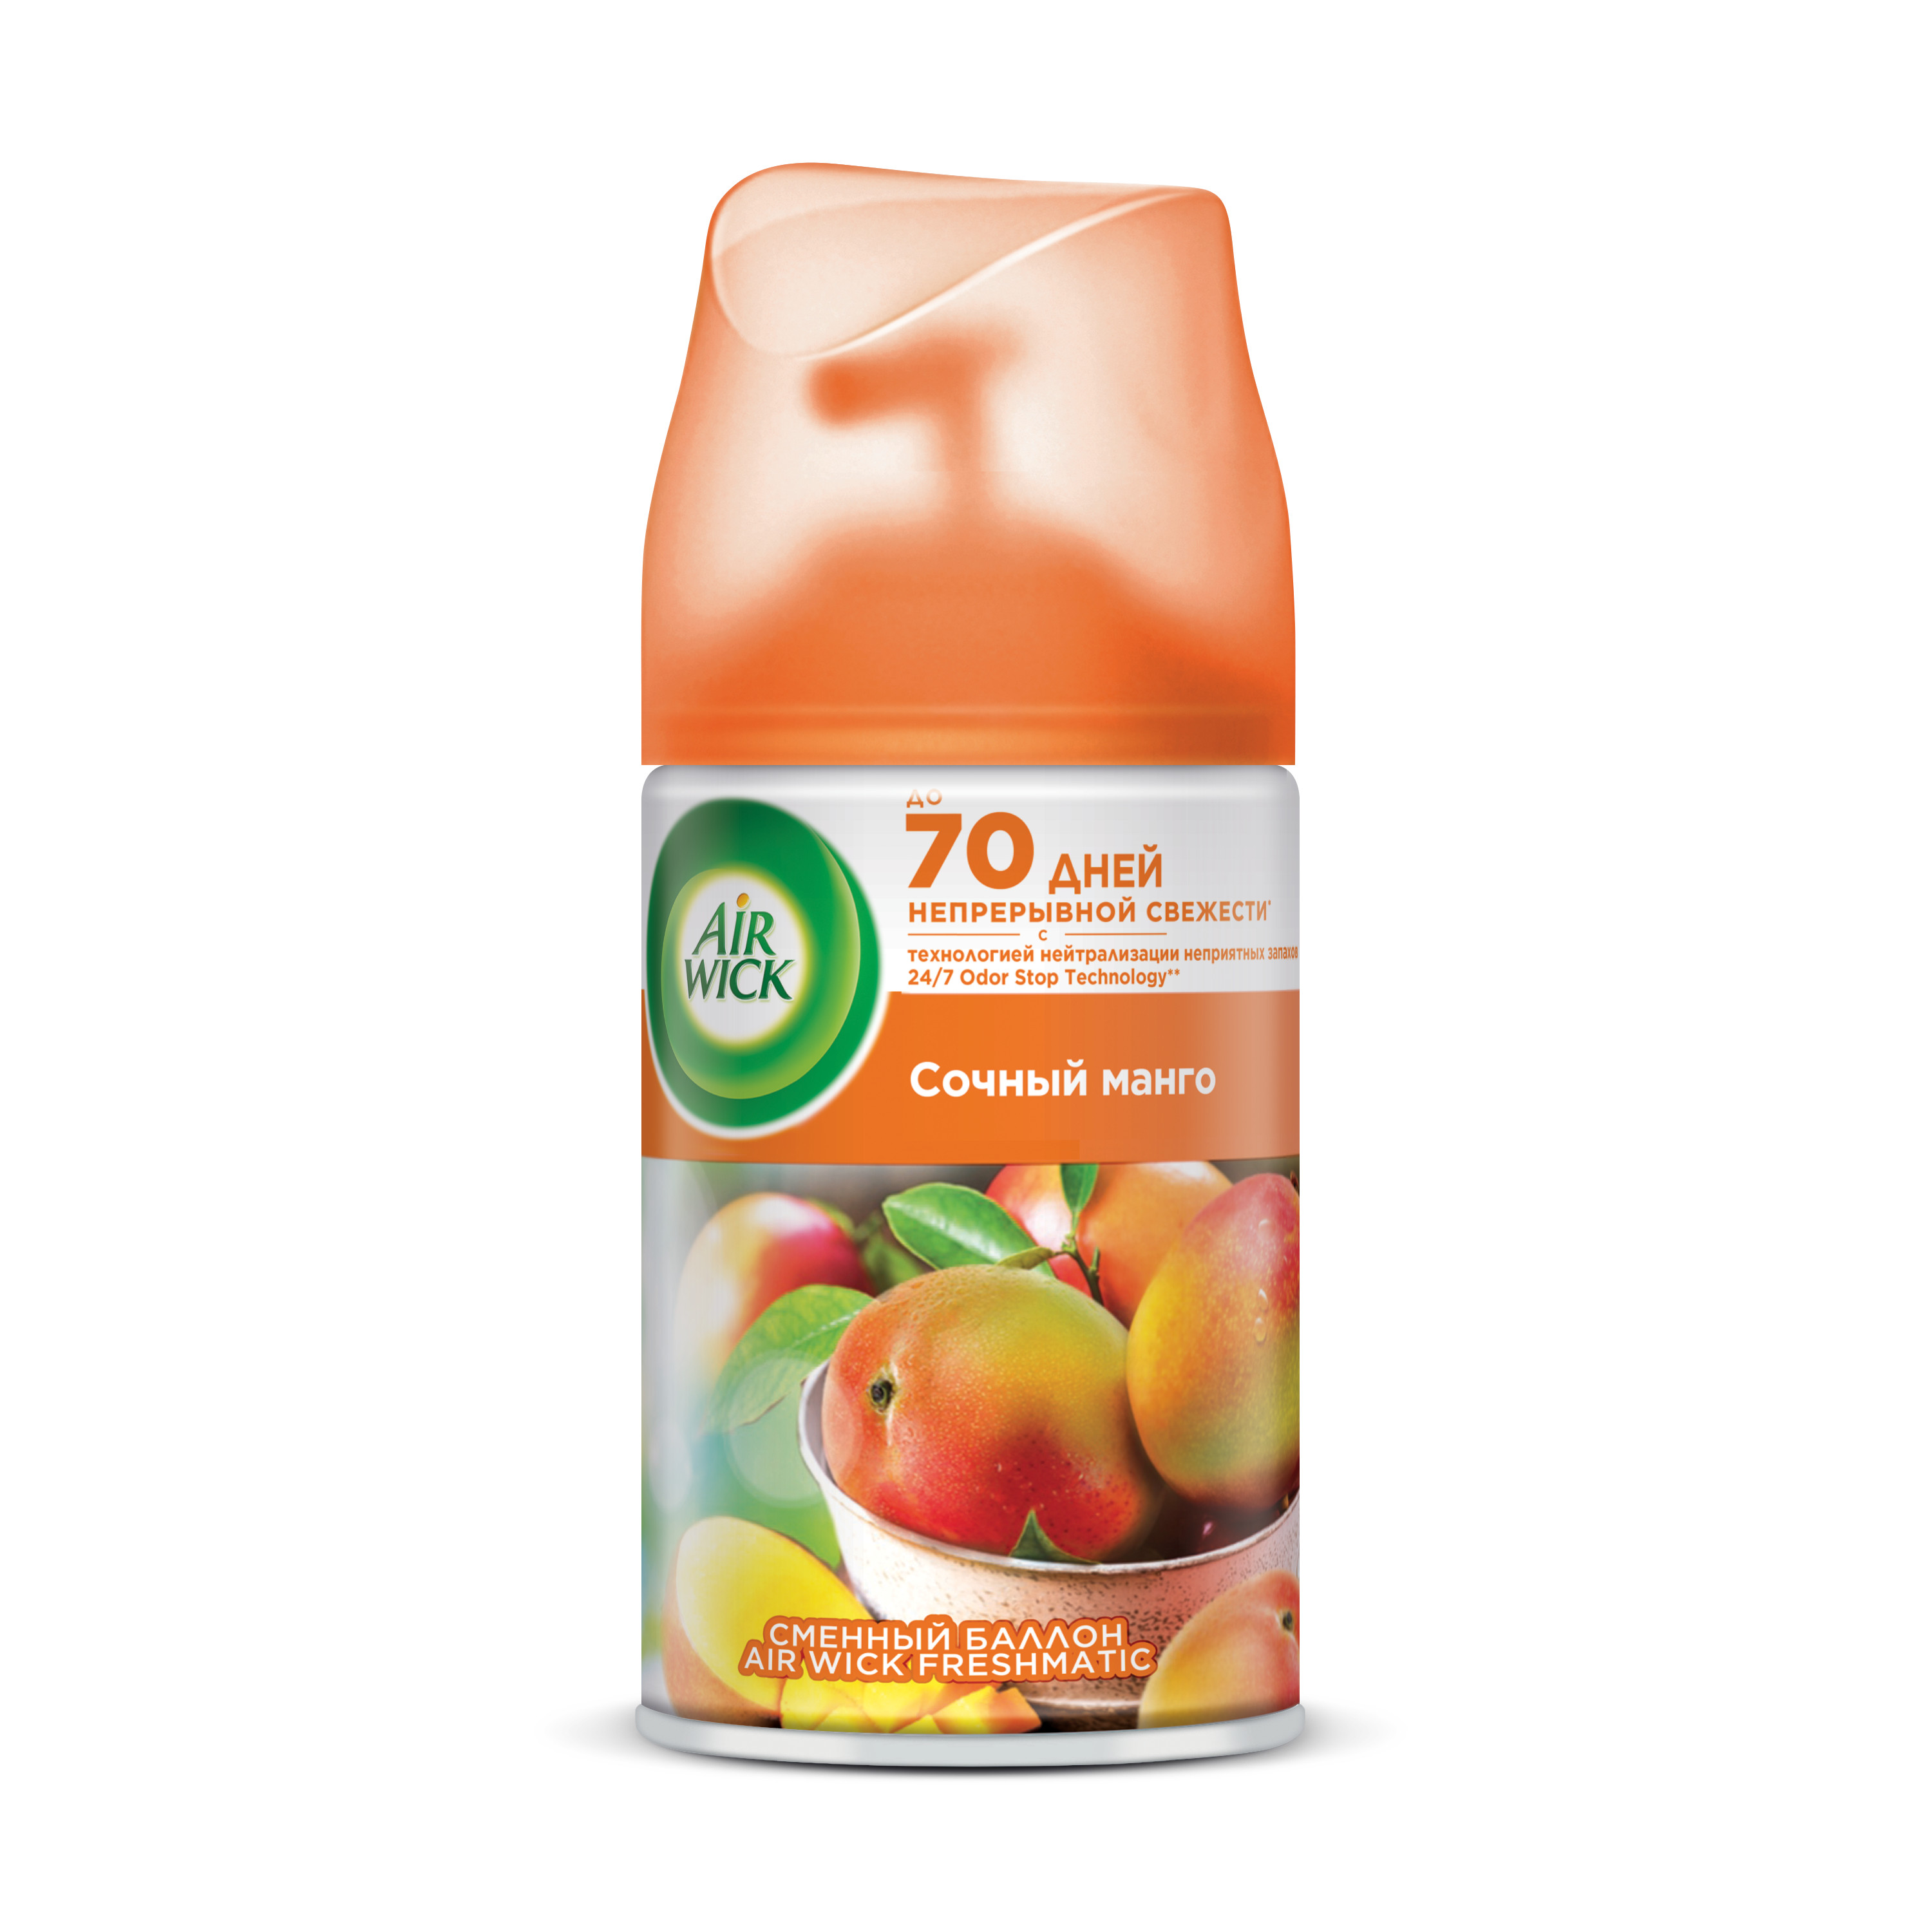 Сменный баллон для освежителя воздуха Air Wick Freshmatic Сочный манго 250 мл сменный баллон для автоматического освежителя воздуха air wick pure апельсин и грейпфрут 250 мл